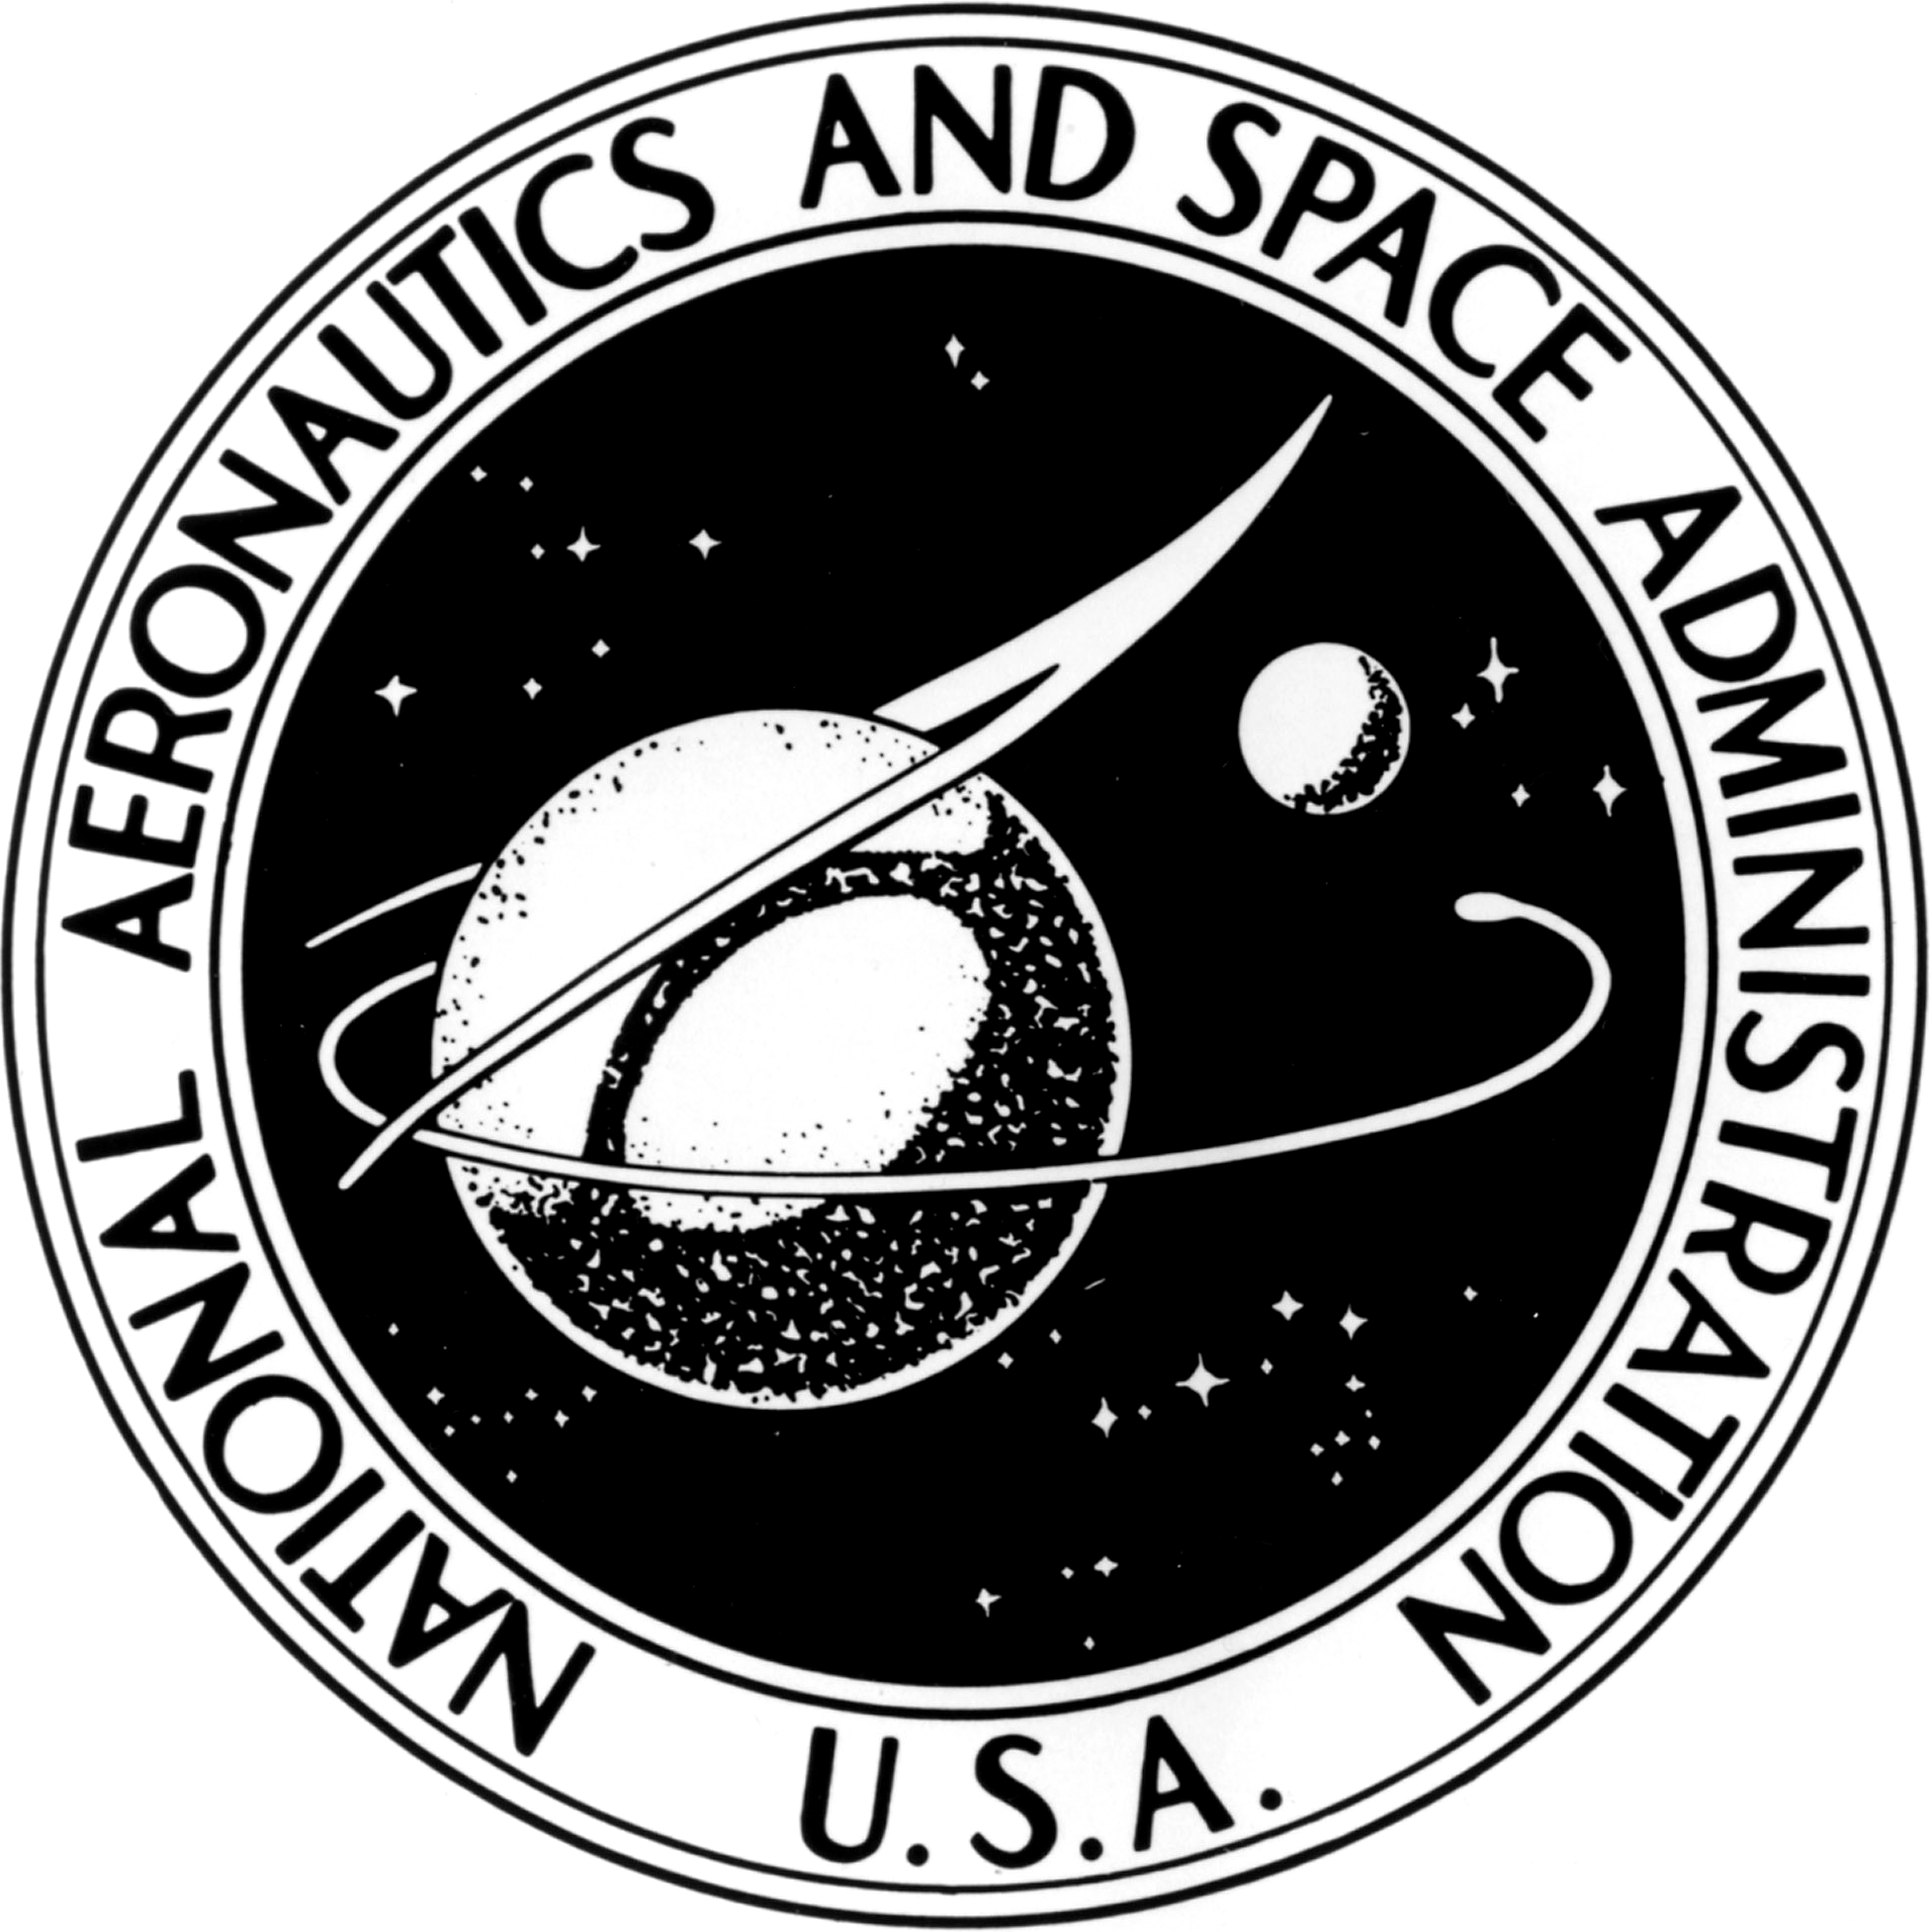 Black NASA Logo - File:US-NASA-Seal-black.png - Wikimedia Commons